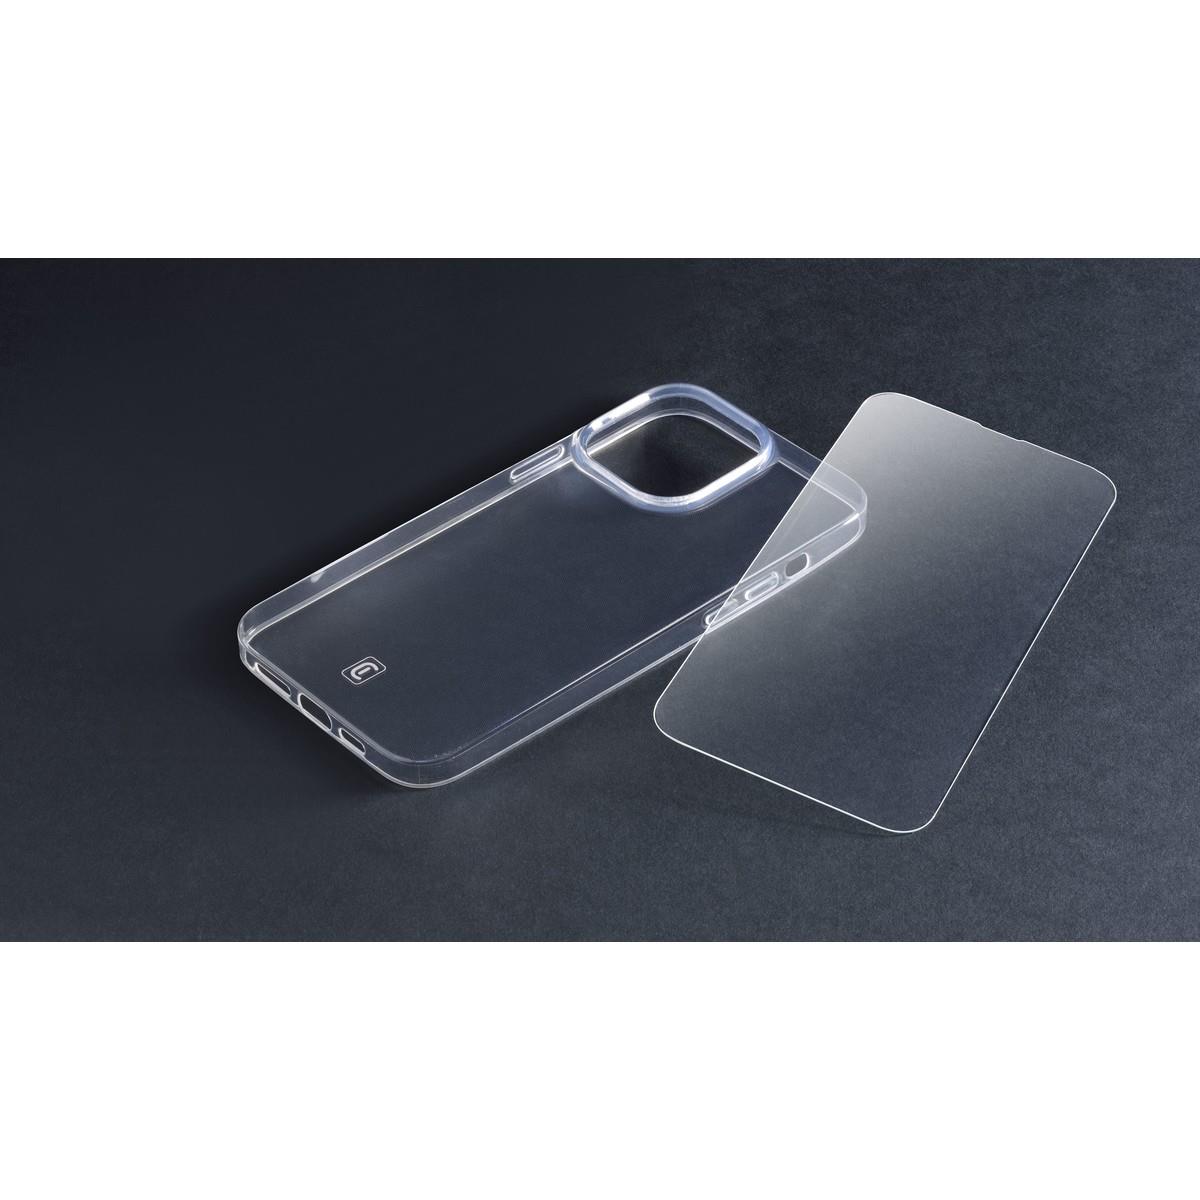 Set PROTECTION KIT aus Backcover und Schutzglas für Apple iPhone 14 Pro